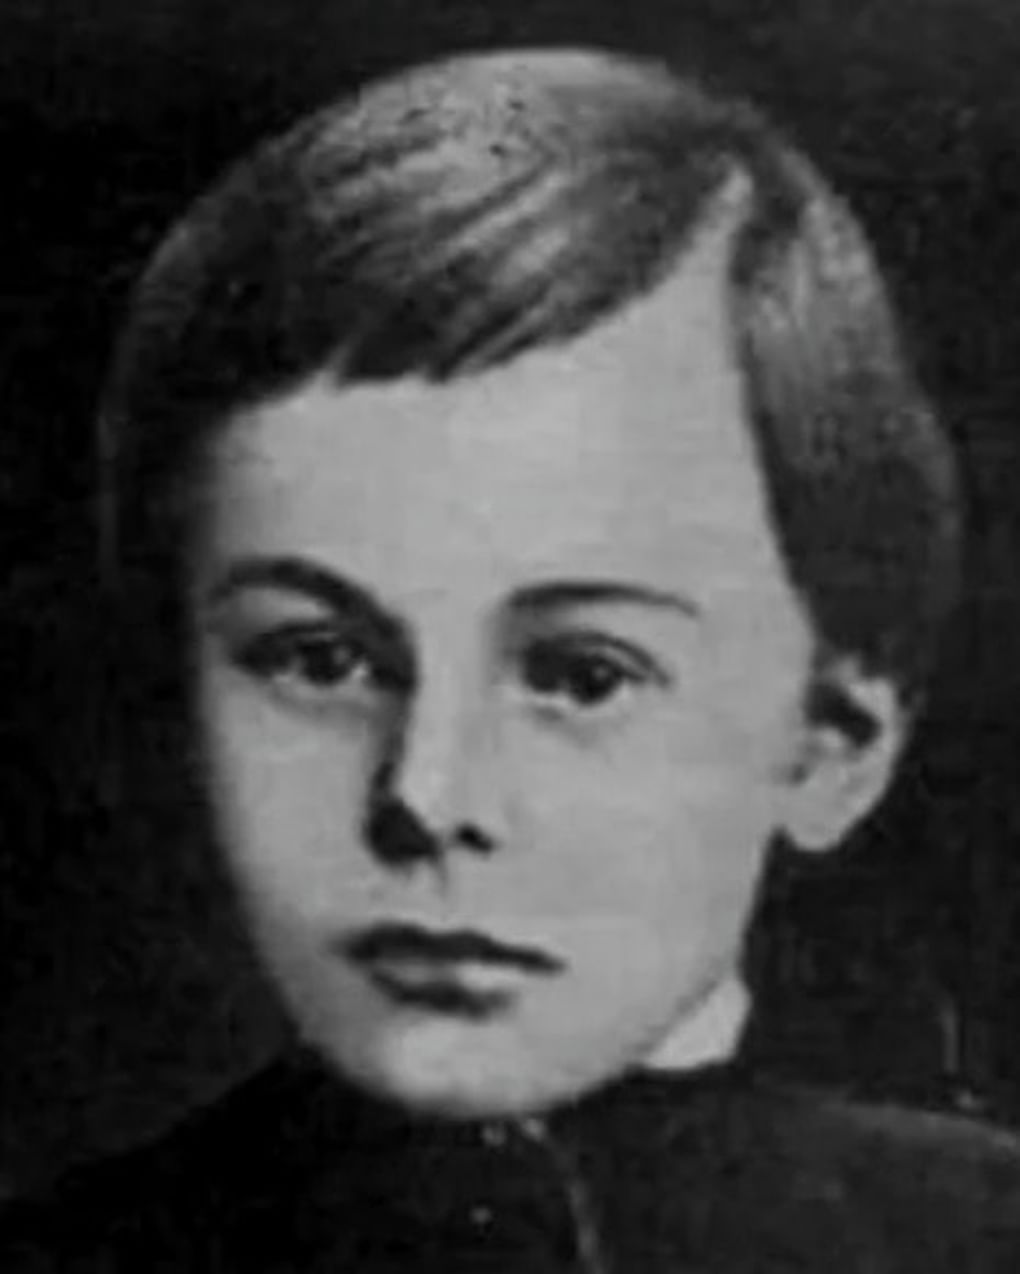 Николай Гоголь-Яновский в детстве. Изображение: book-briefly.ru